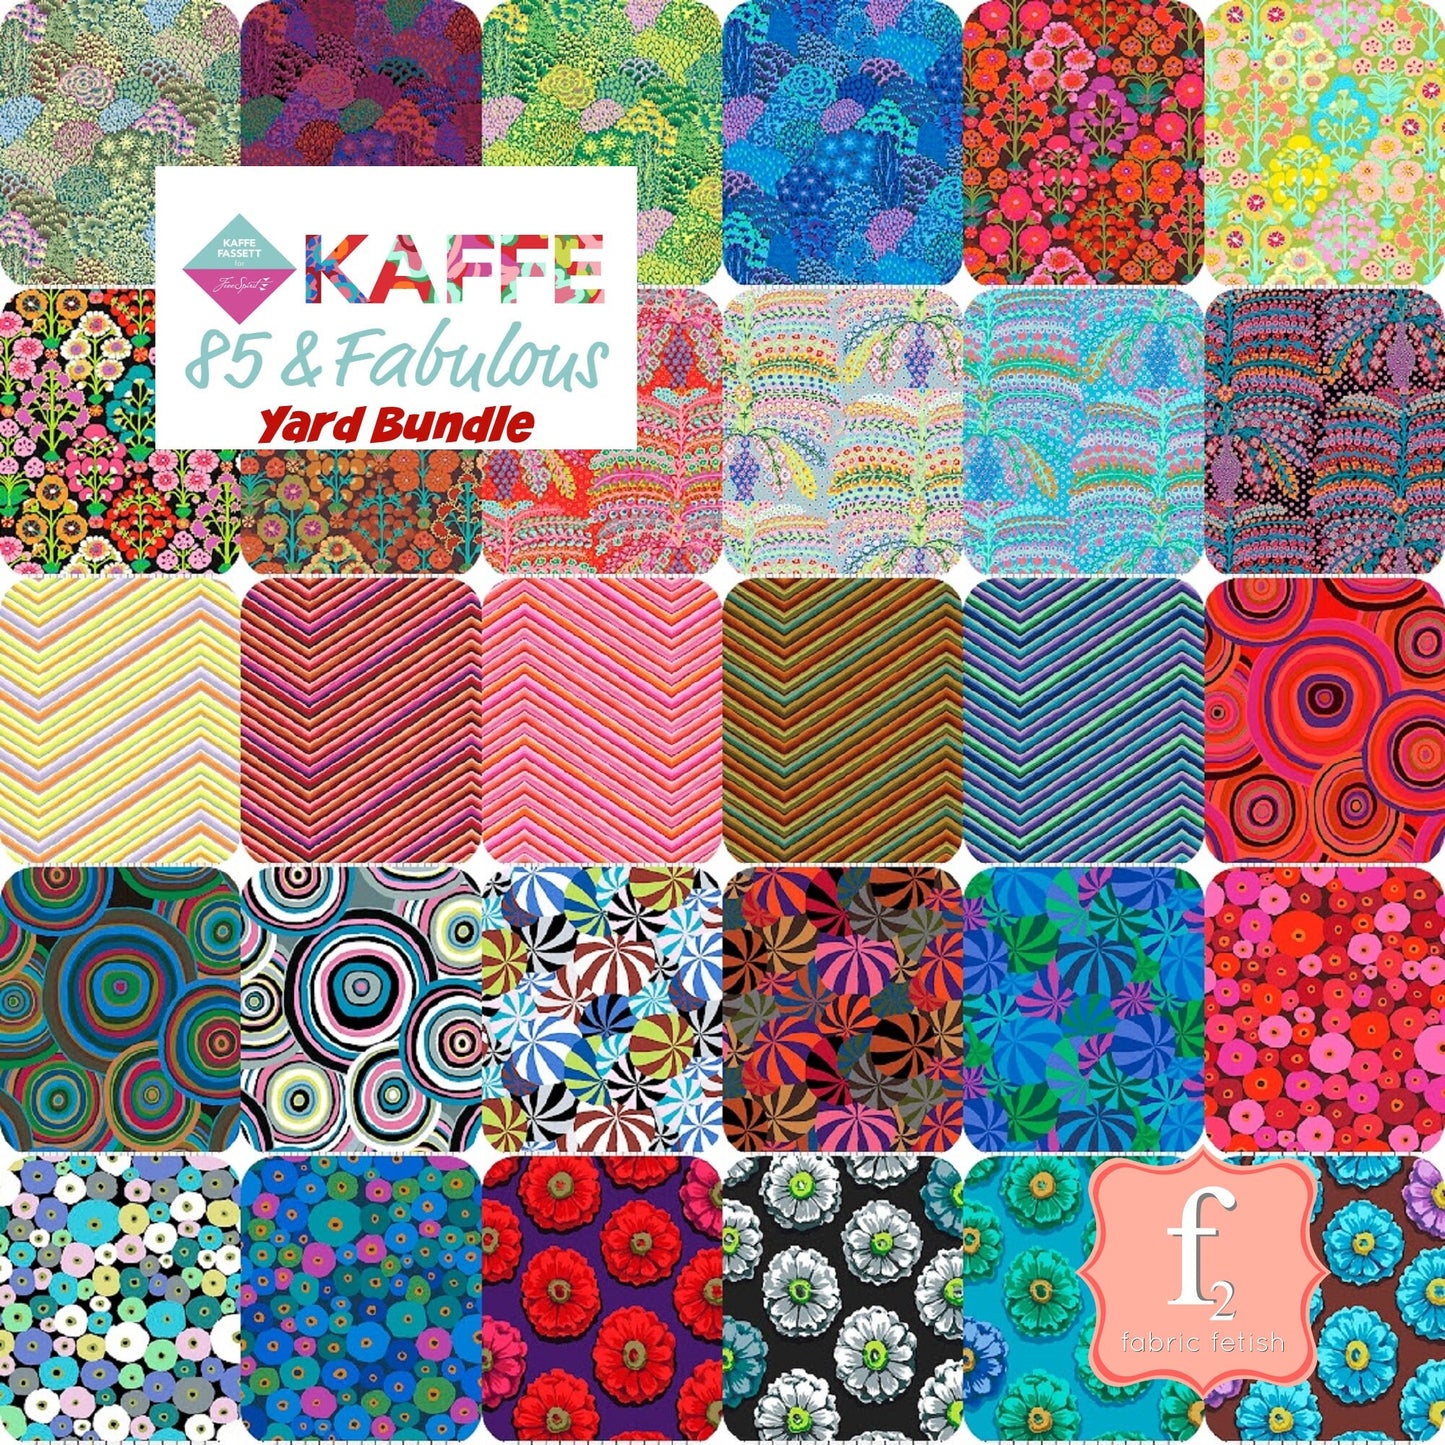 85 and Fabulous 30 Pcs YARD Bundle Kaffe Fassett Freespirit Fabrics Shipping Now Fabric Fetish